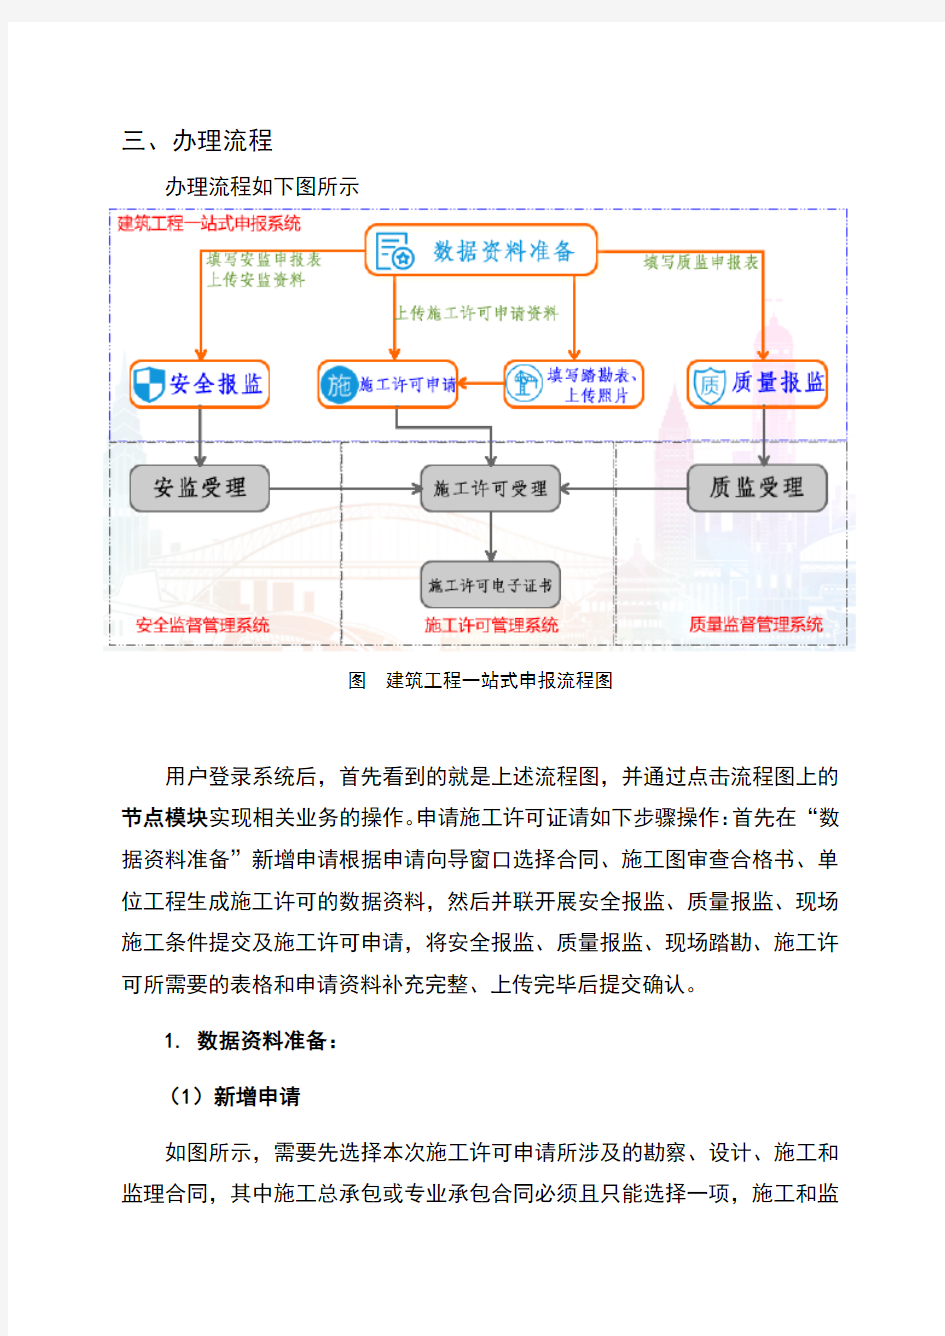 江苏省建筑工程一站式申报系统